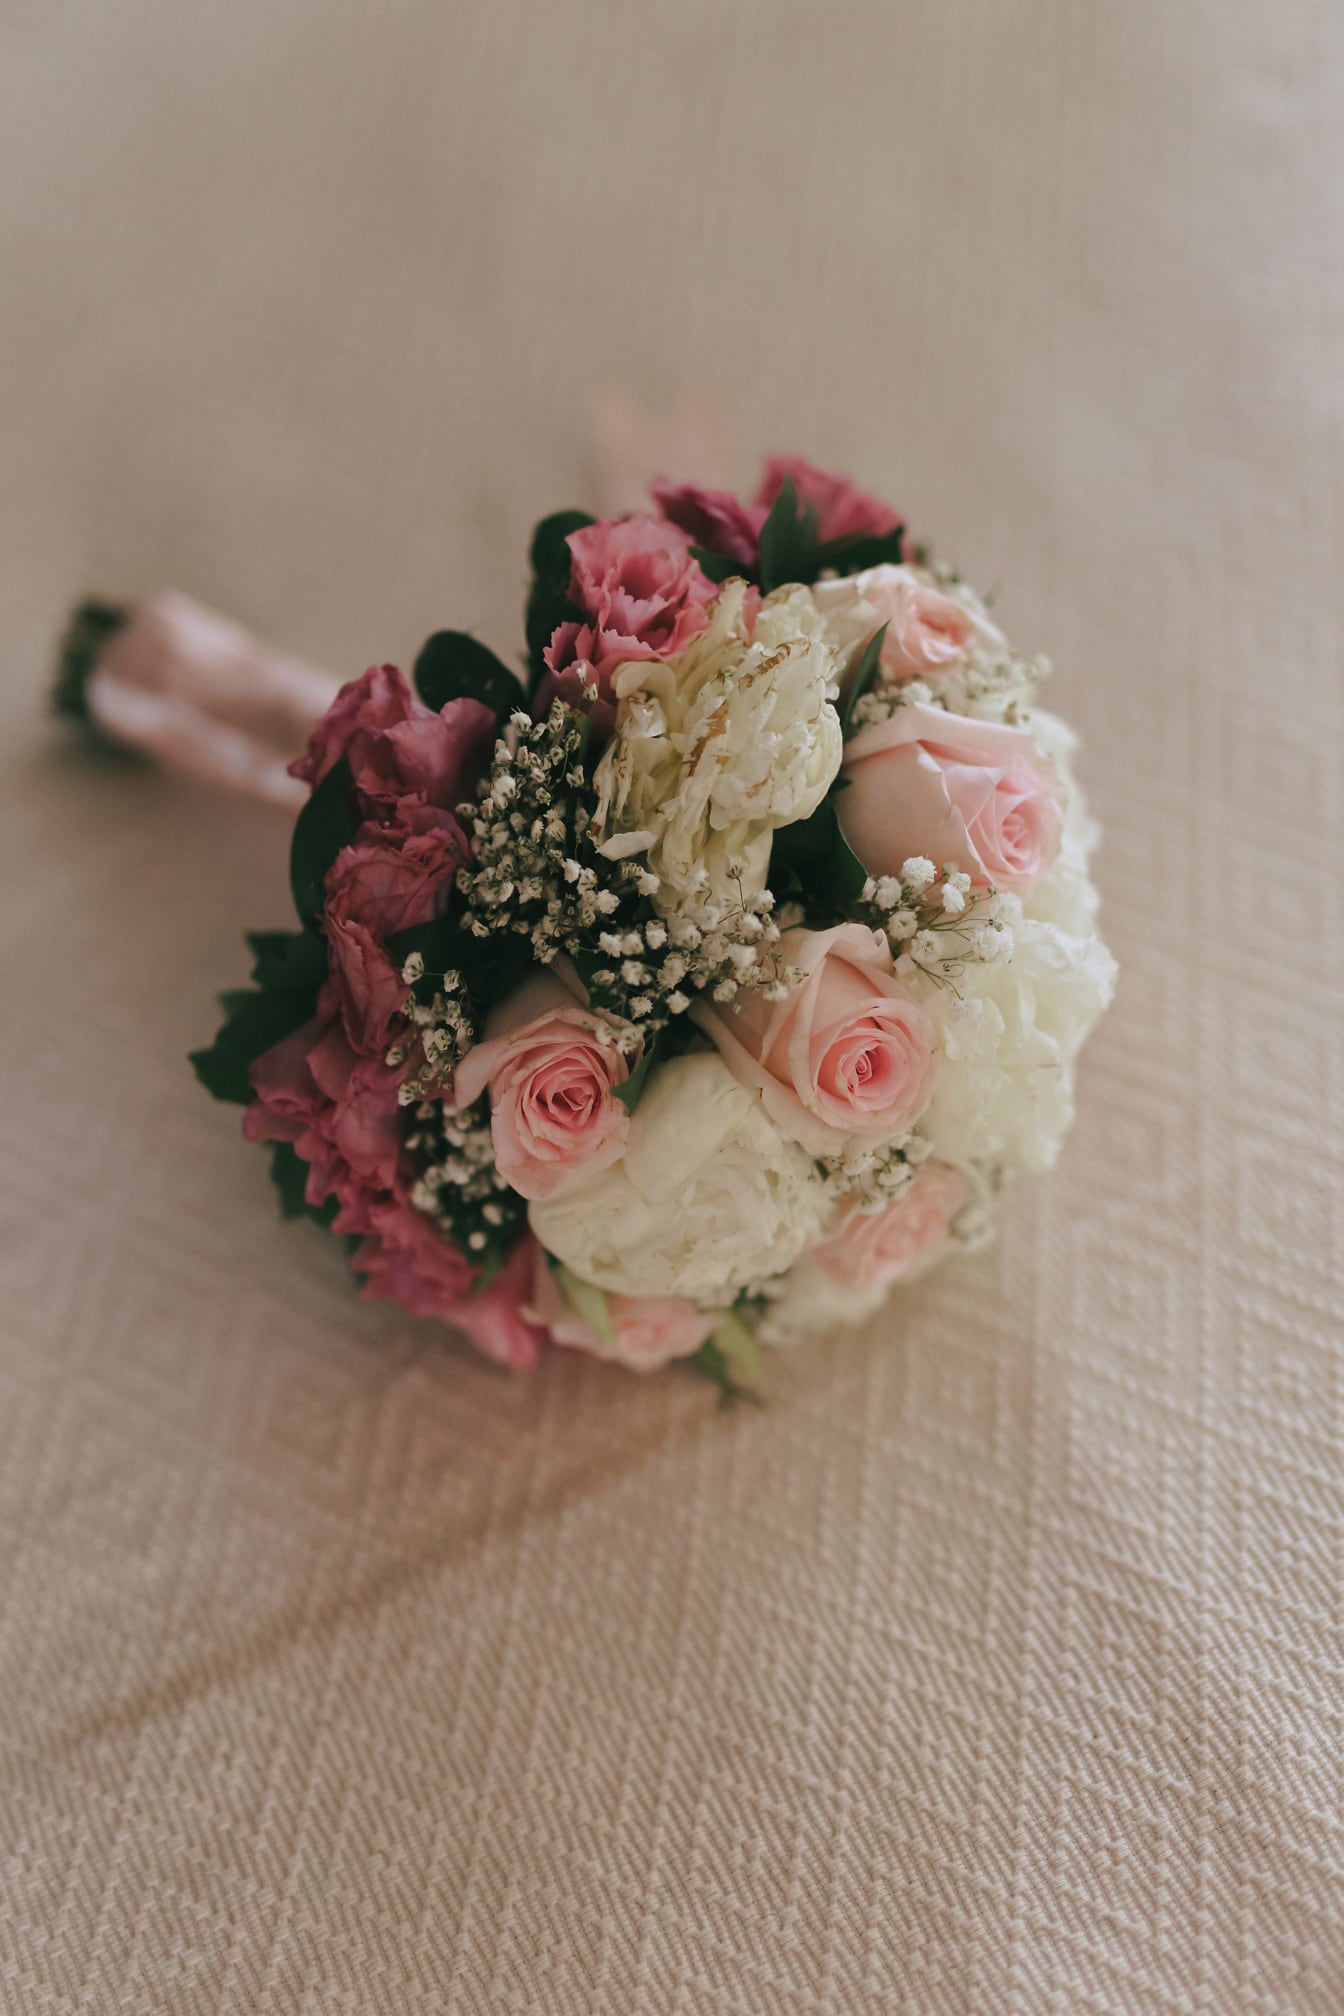 Esküvői csokor pasztell rózsaszínű és fehér rózsákkal